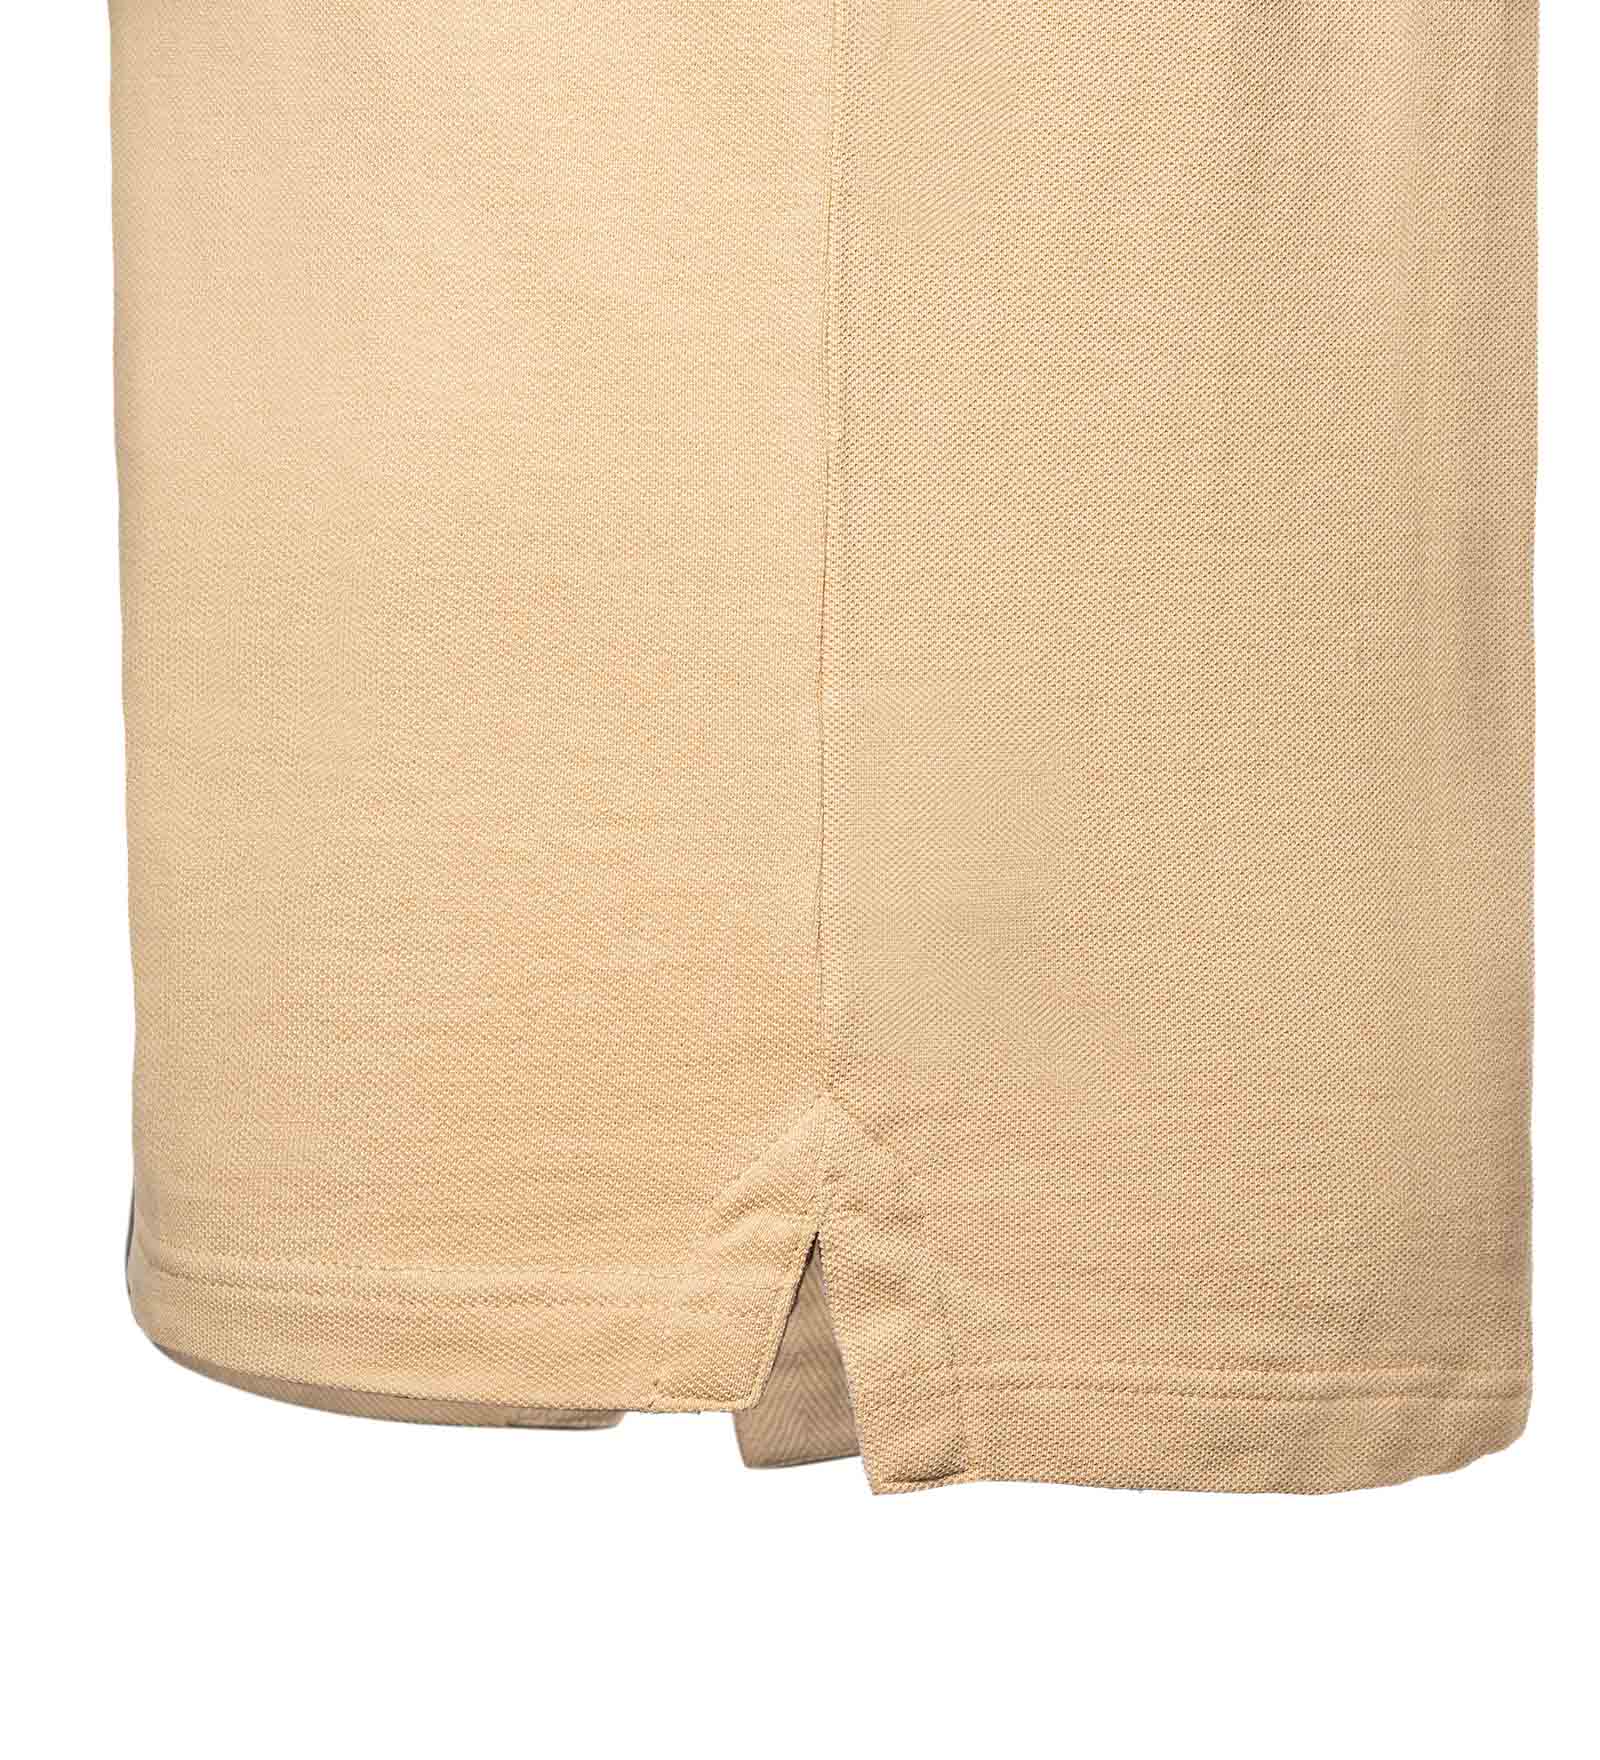 Tennis tail beige polo shirt